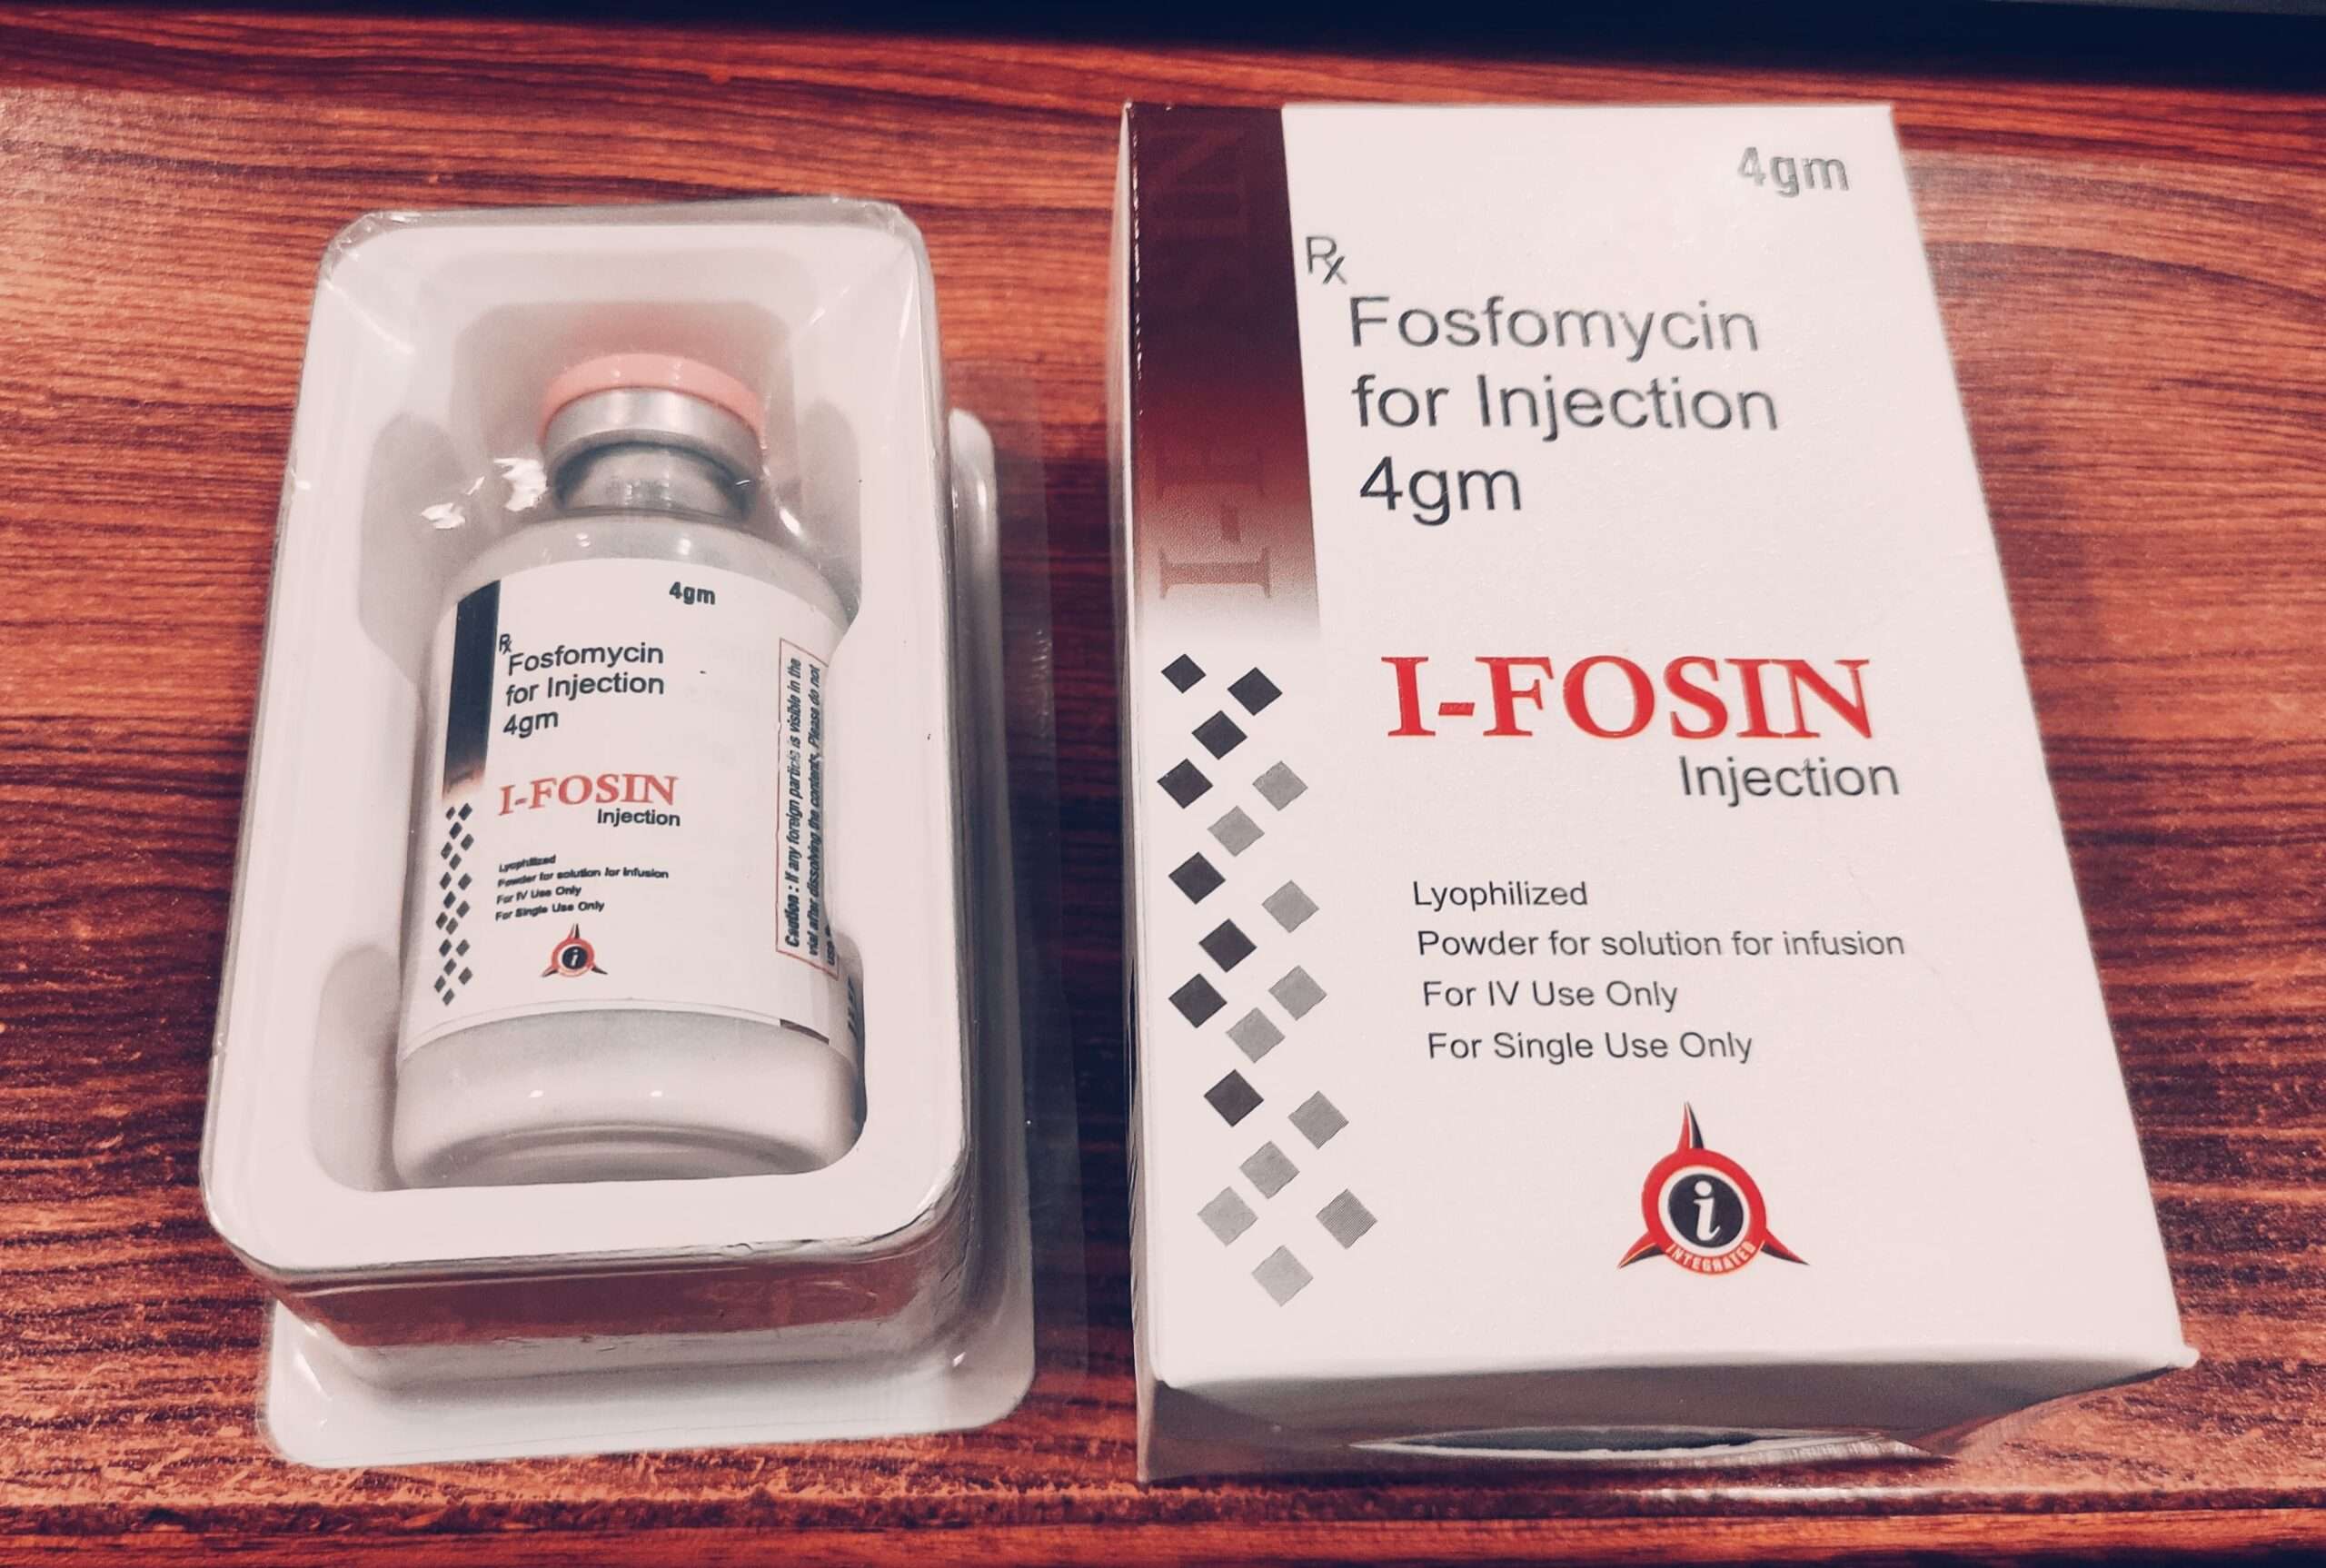 Fosfomycin 4gm injection